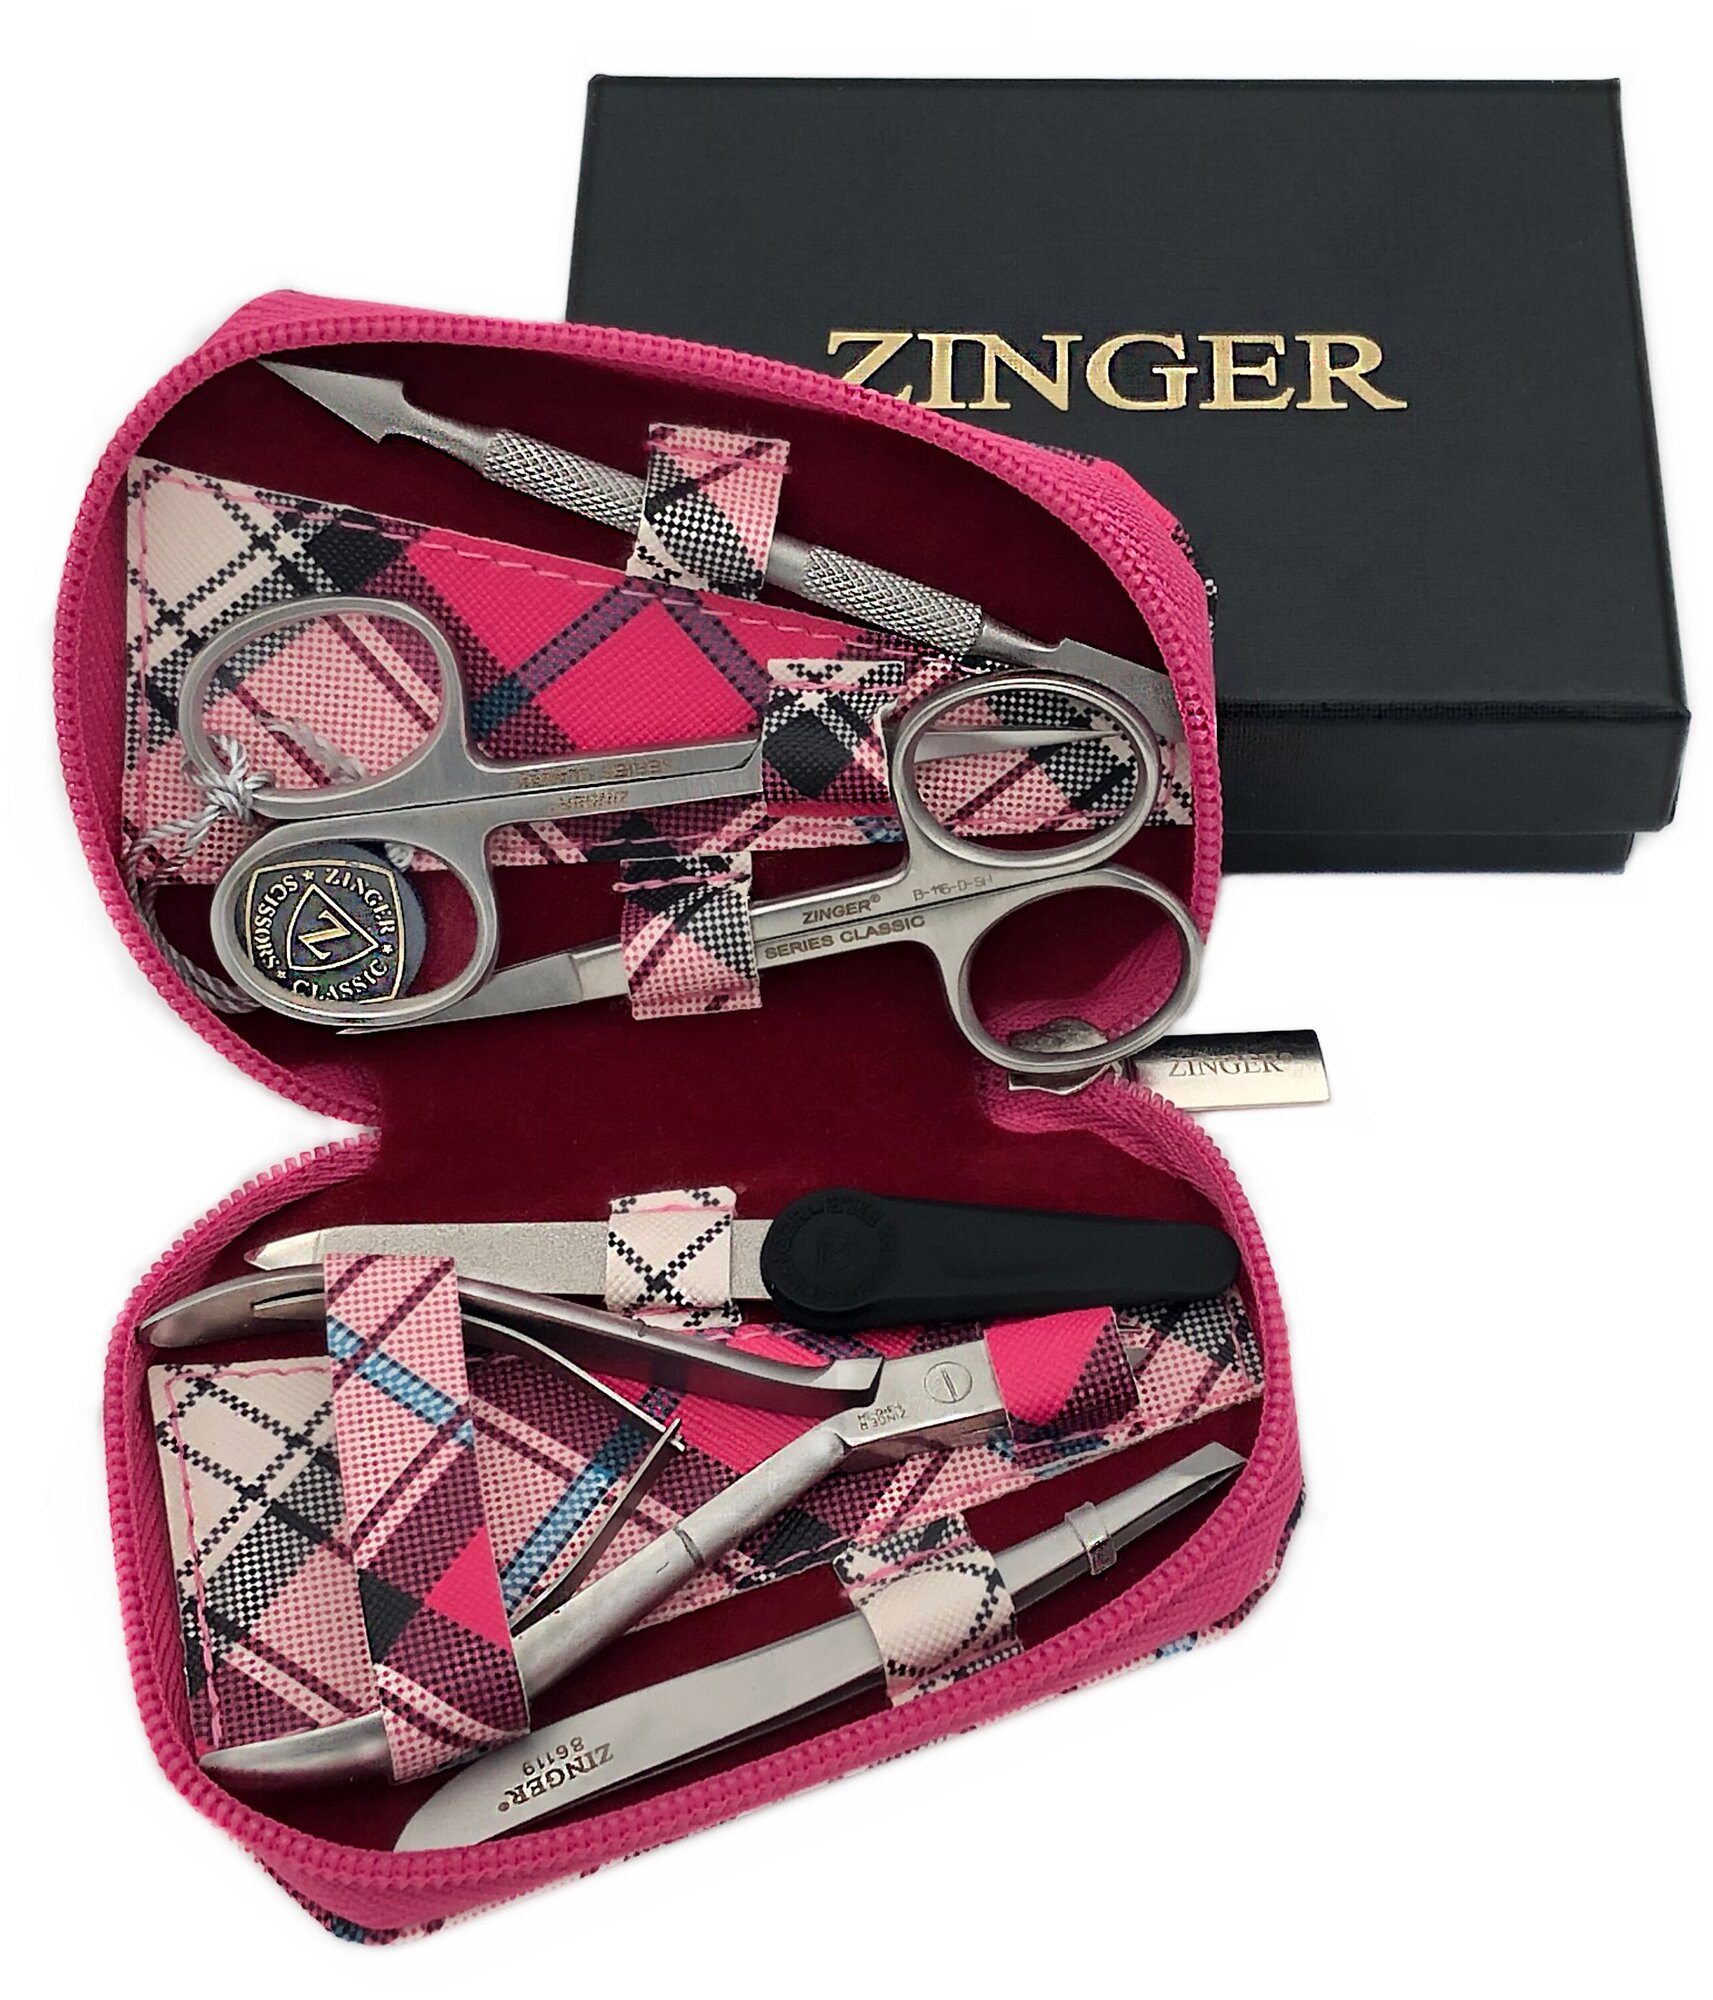 Маникюрный набор Zinger 7103, 6 предметов, серебристый/розовый клетка